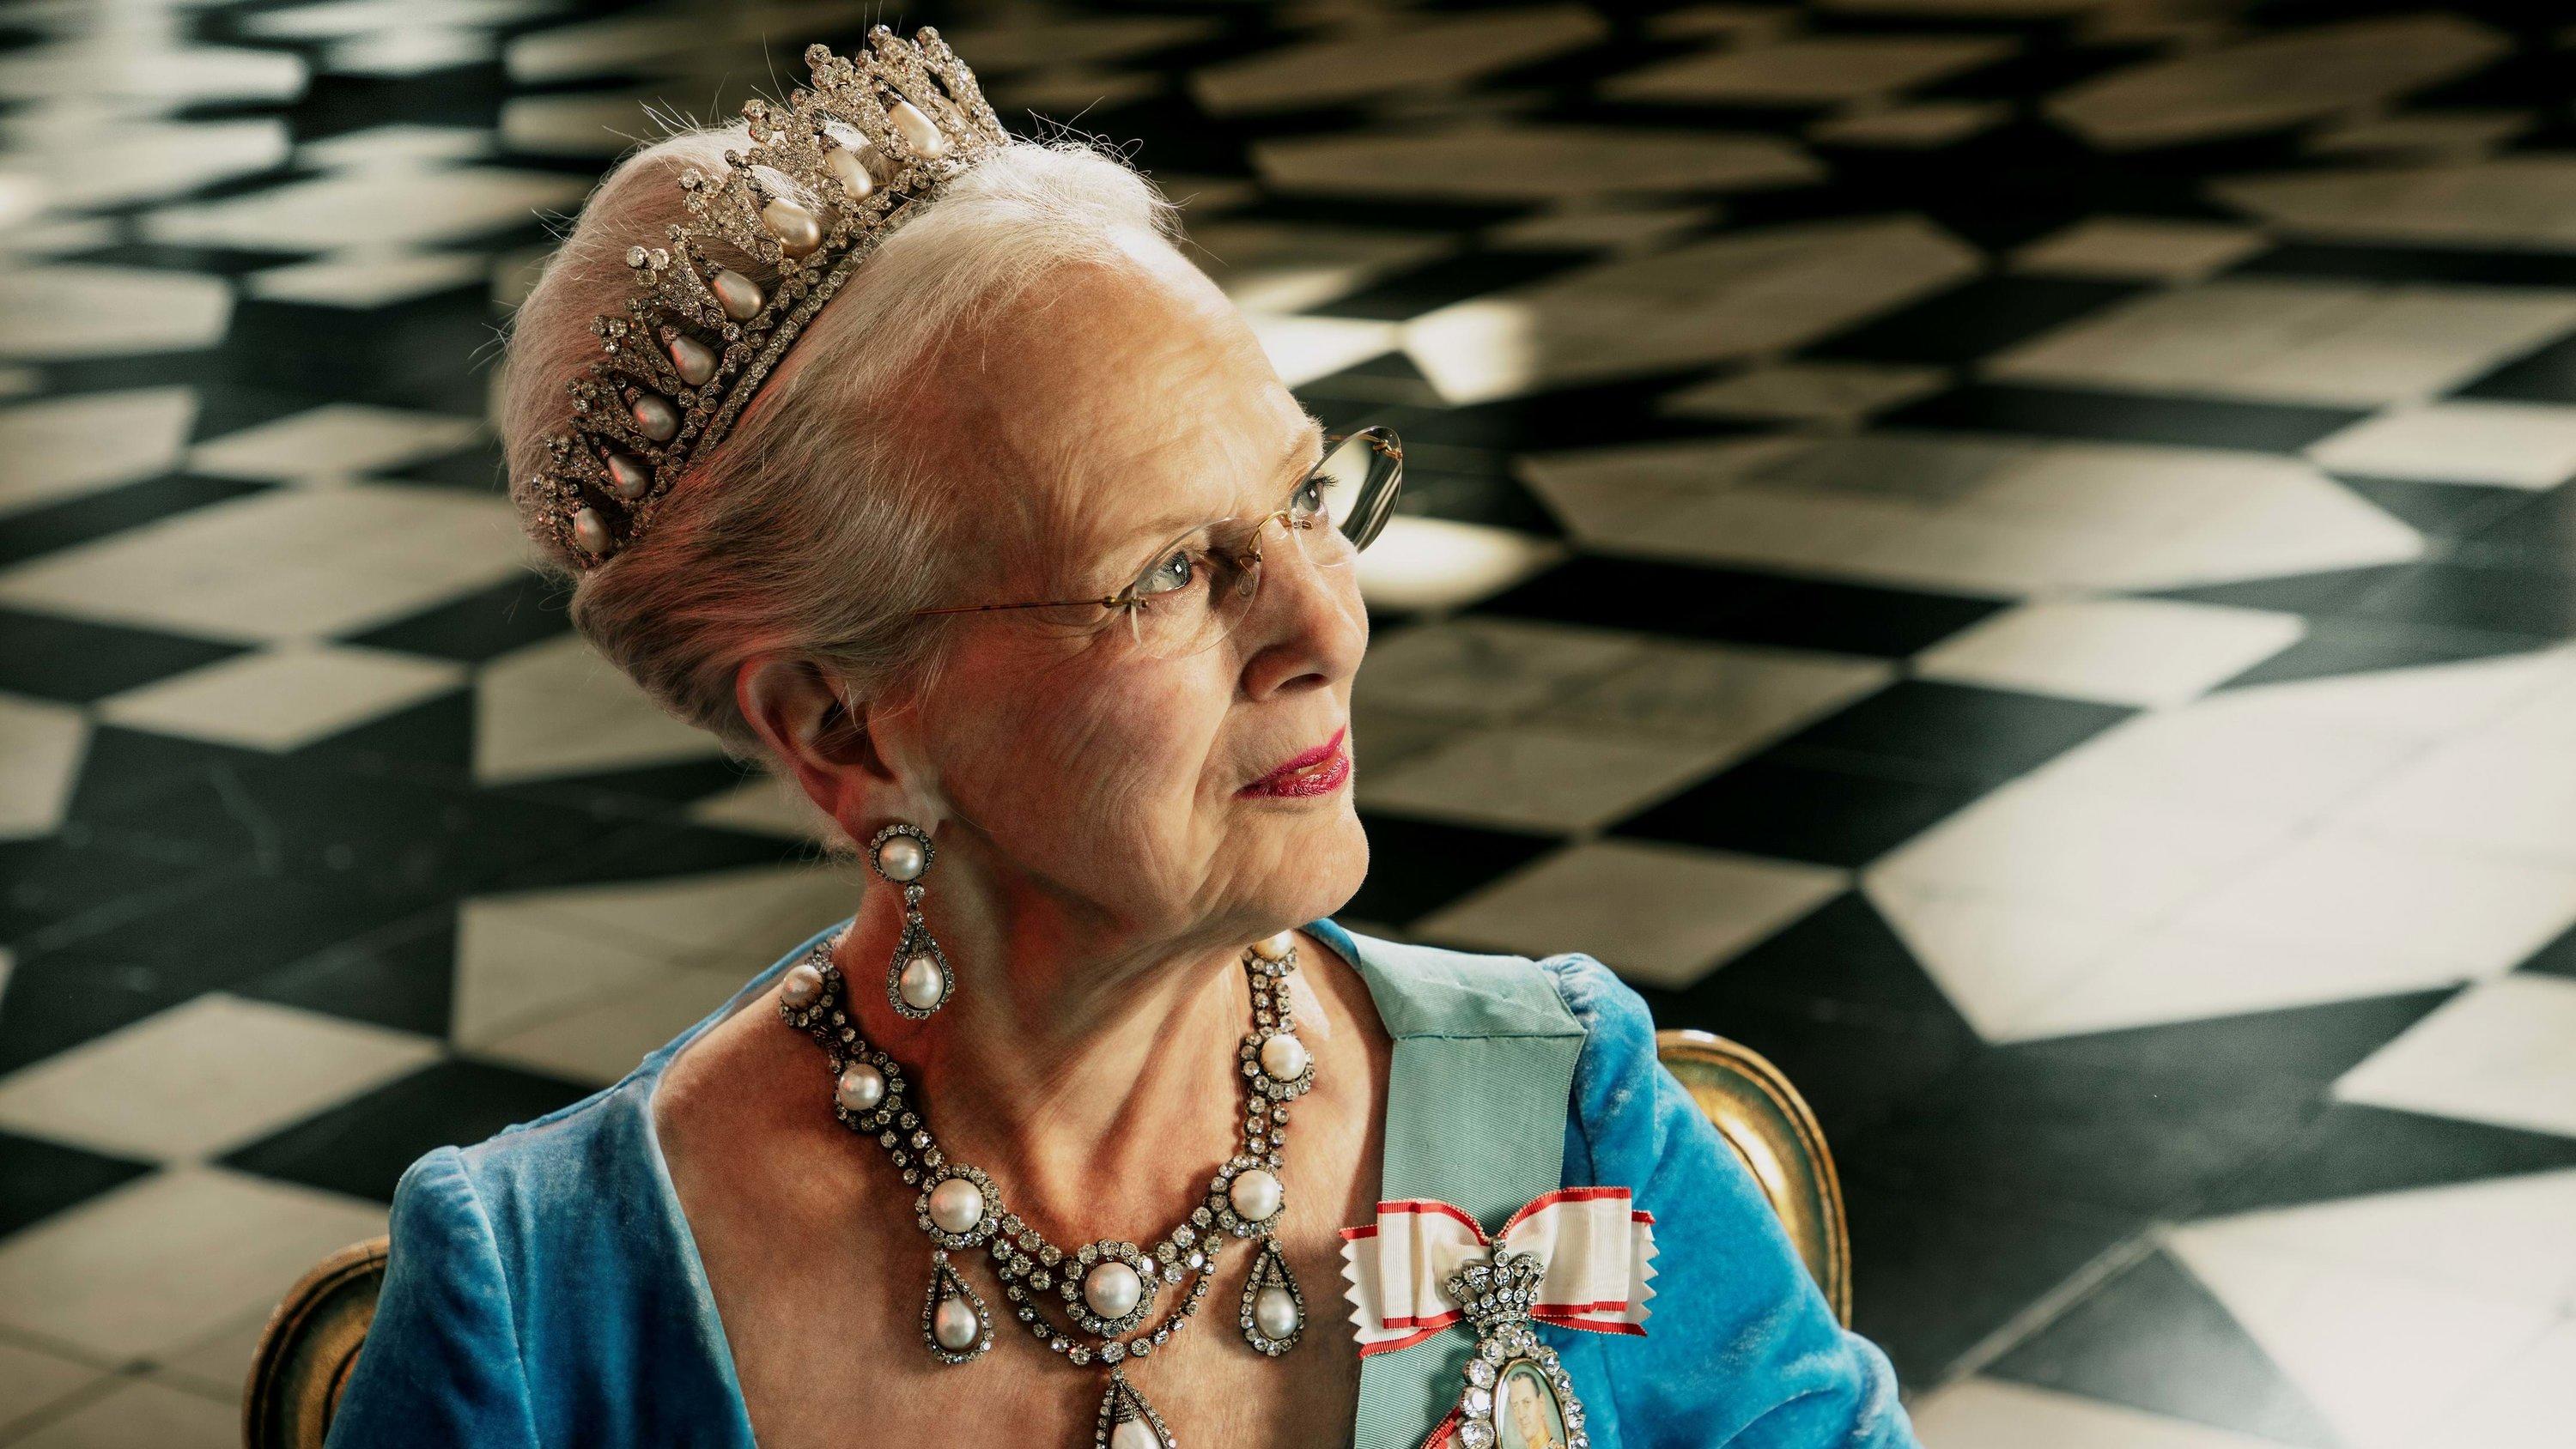 HANDOUT - 07.01.2022, Dänemark, Kopenhagen: Offizielles Porträt von Königin Margrethe II. von Dänemark, das anlässlich ihres 50. Thronjubiläums am 14.01.2022 veröffentlicht wurde (Aufnahmedatum unbekannt). (zu dpa-Korr "Große Party aufgeschoben - 50.